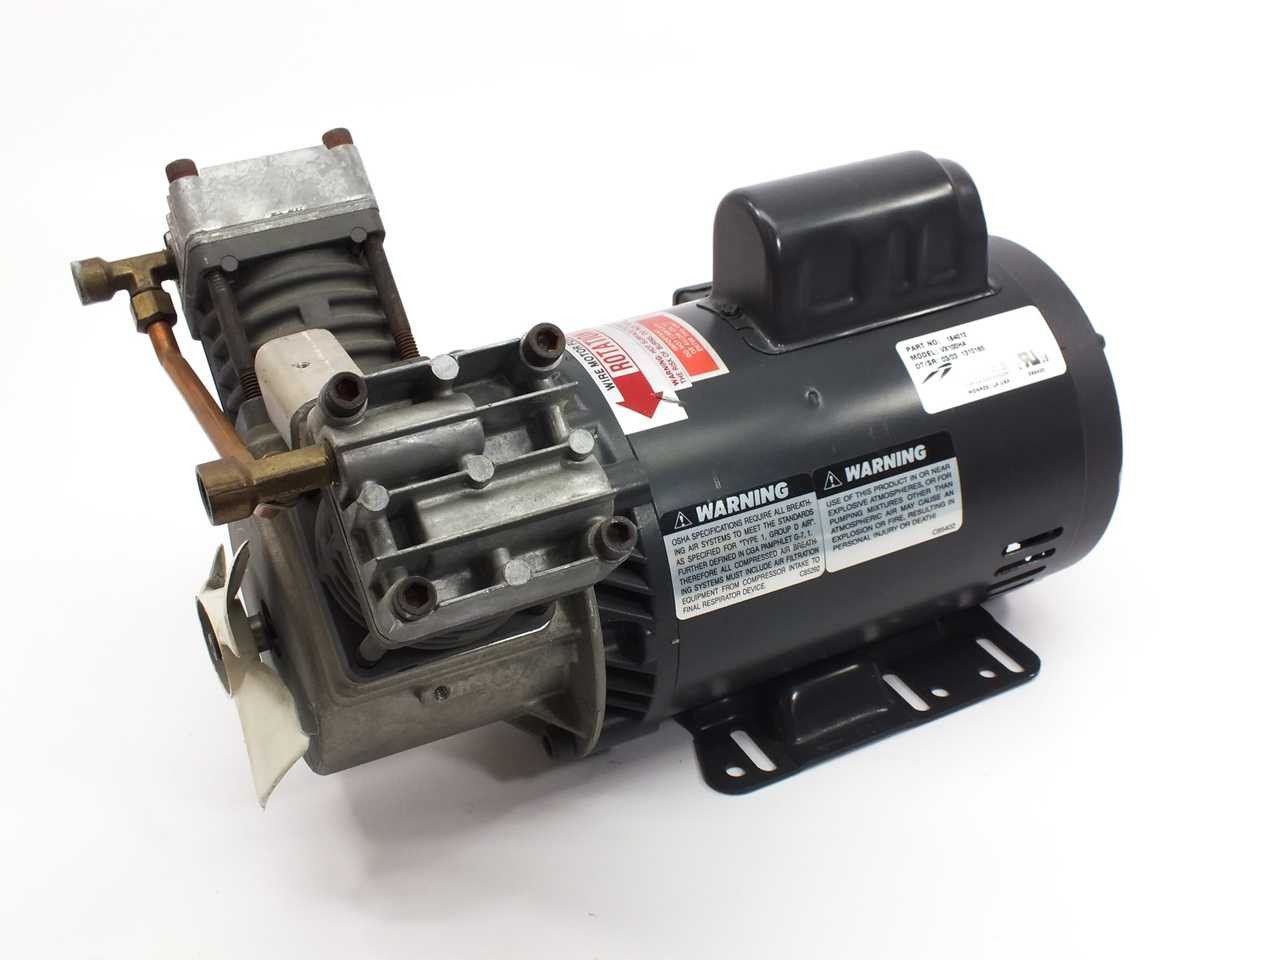 Thomas VX100HA VORTEX Articulating Piston Oil-Less Compressor 1-HP 115/230  VAC (184012)